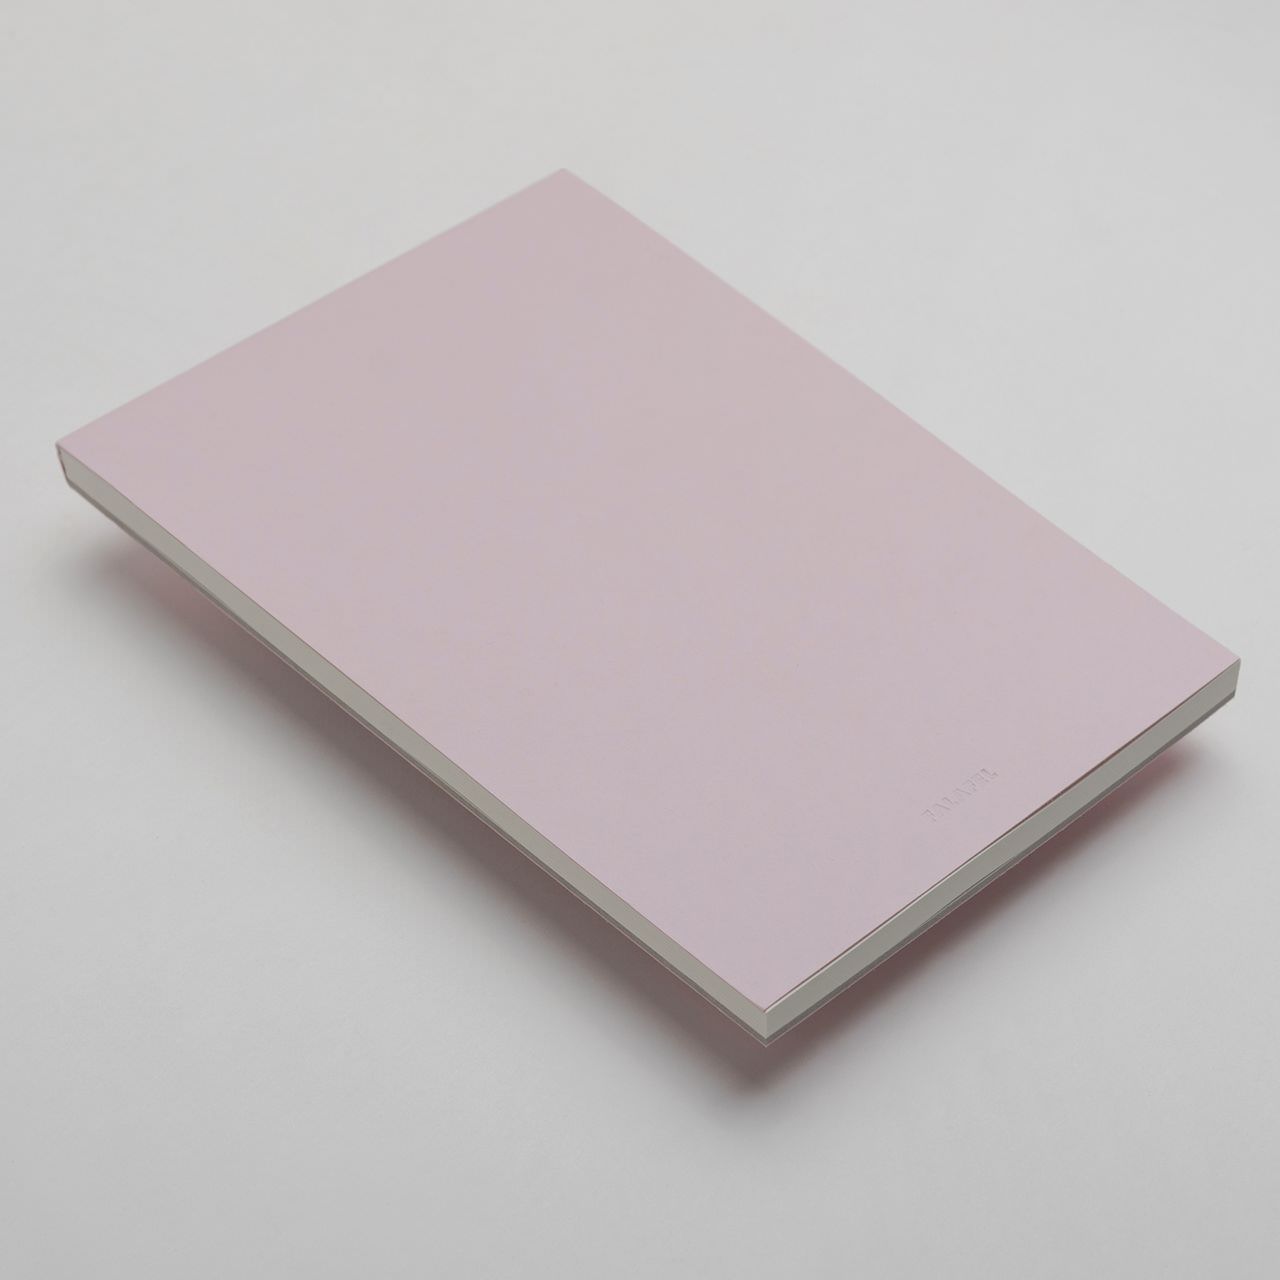 Блокнот для графики FALAFEL Pale Pink 80г/кв.м (А5) 148х210мм 60л. листы c перфорацией по 299.00 руб от Falafel books